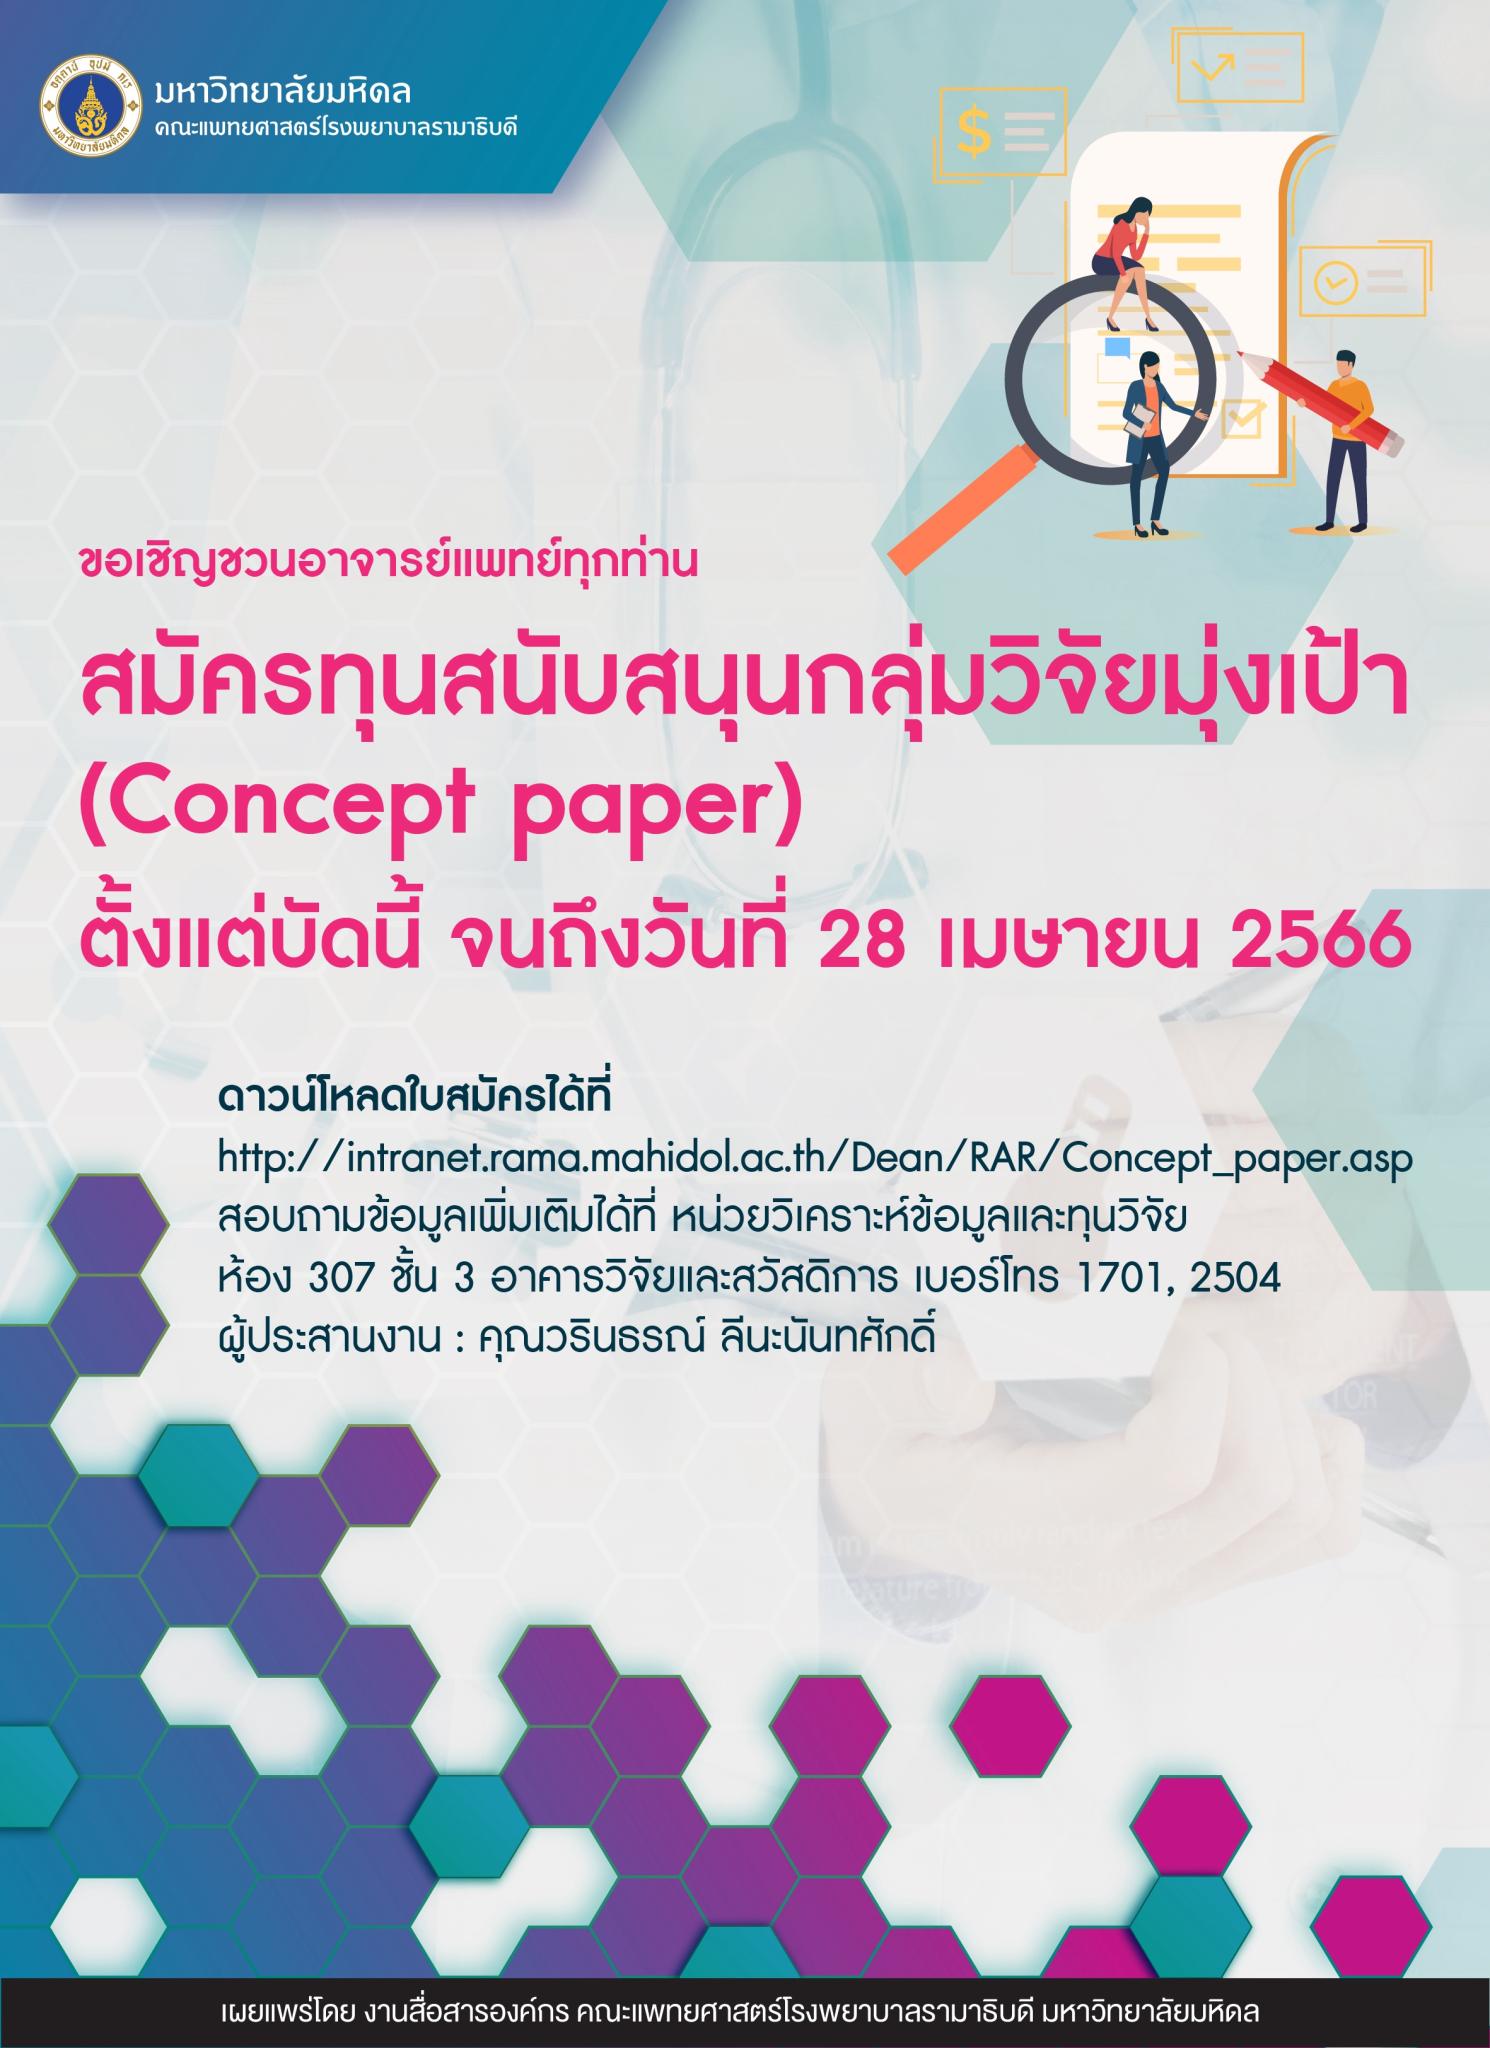 ขอเชิญชวนอาจารย์แพทย์ทุกท่าน สมัครทุนสนับสนุนกลุ่มวิจัยมุ่งเป้า (Concept paper)